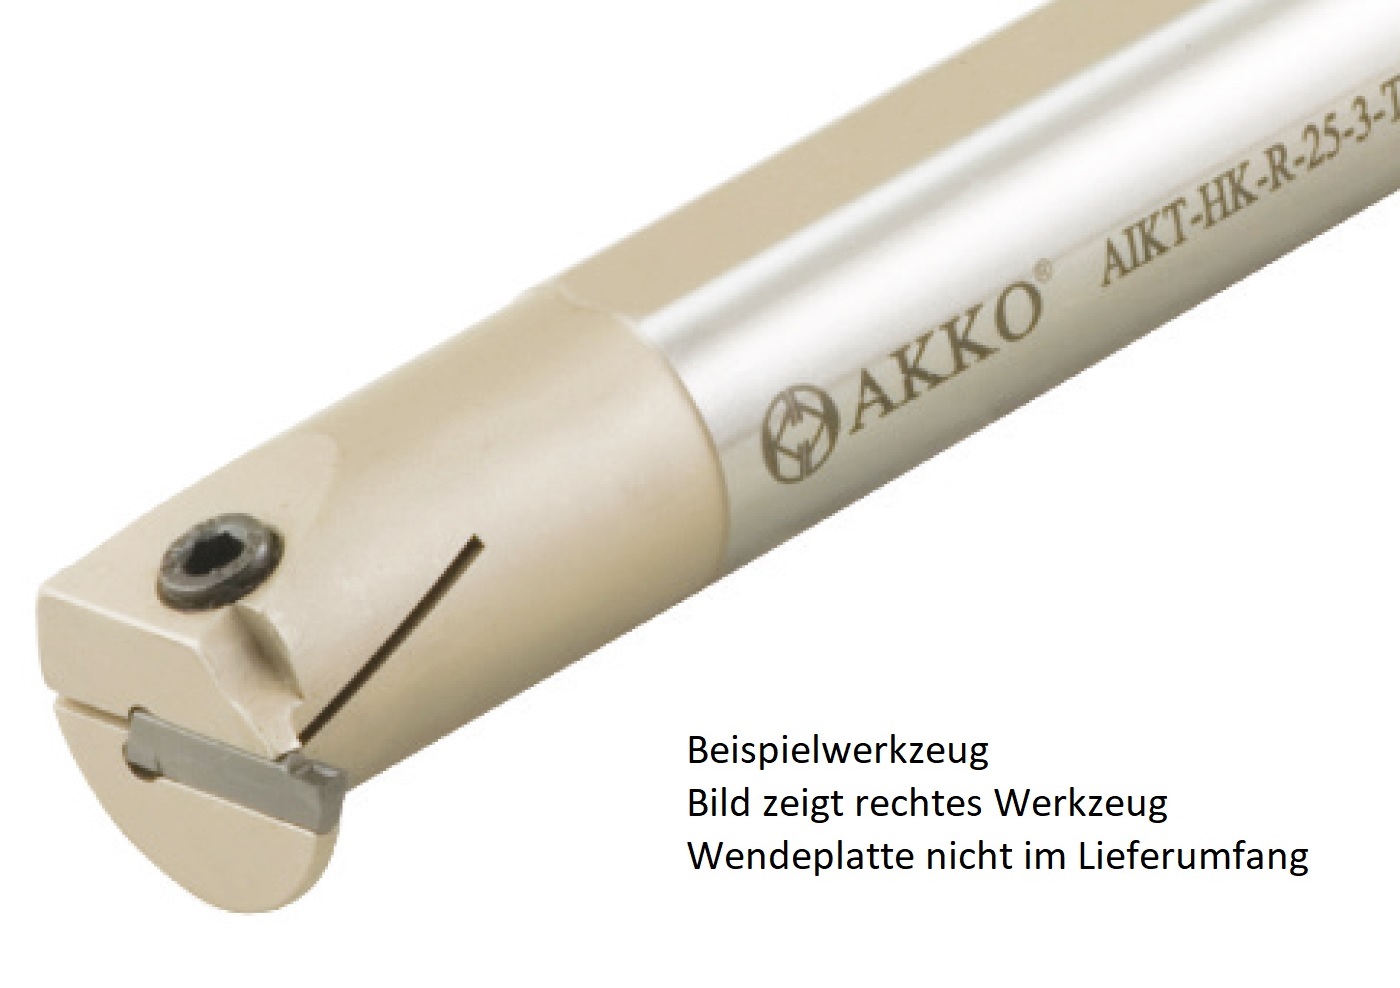 AKKO-Innen-Stechhalter, kompatibel mit Horn-Stechplatte S224-3
Schaft-ø 20, ohne Innenkühlung, links